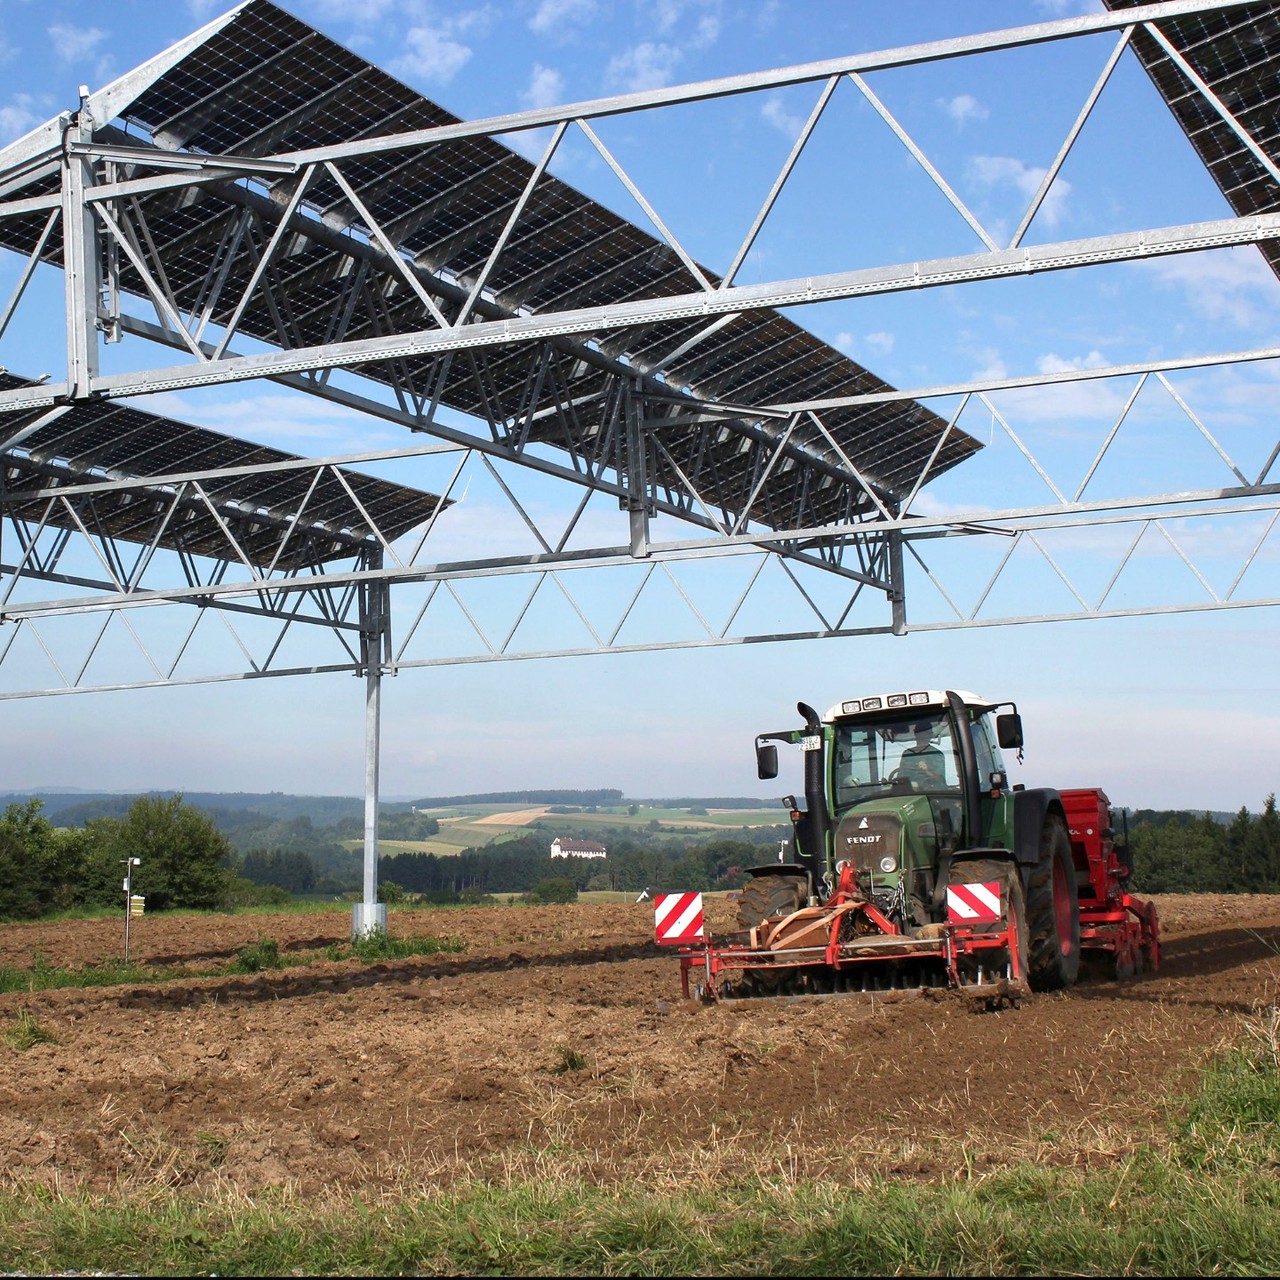 프라운호퍼는 영농형 태양광을 통해 비옥한 농지를 유지하면서 발전 사업도 병행할 수 있다고 밝혔다. (사진=프라운호퍼 홈페이지).